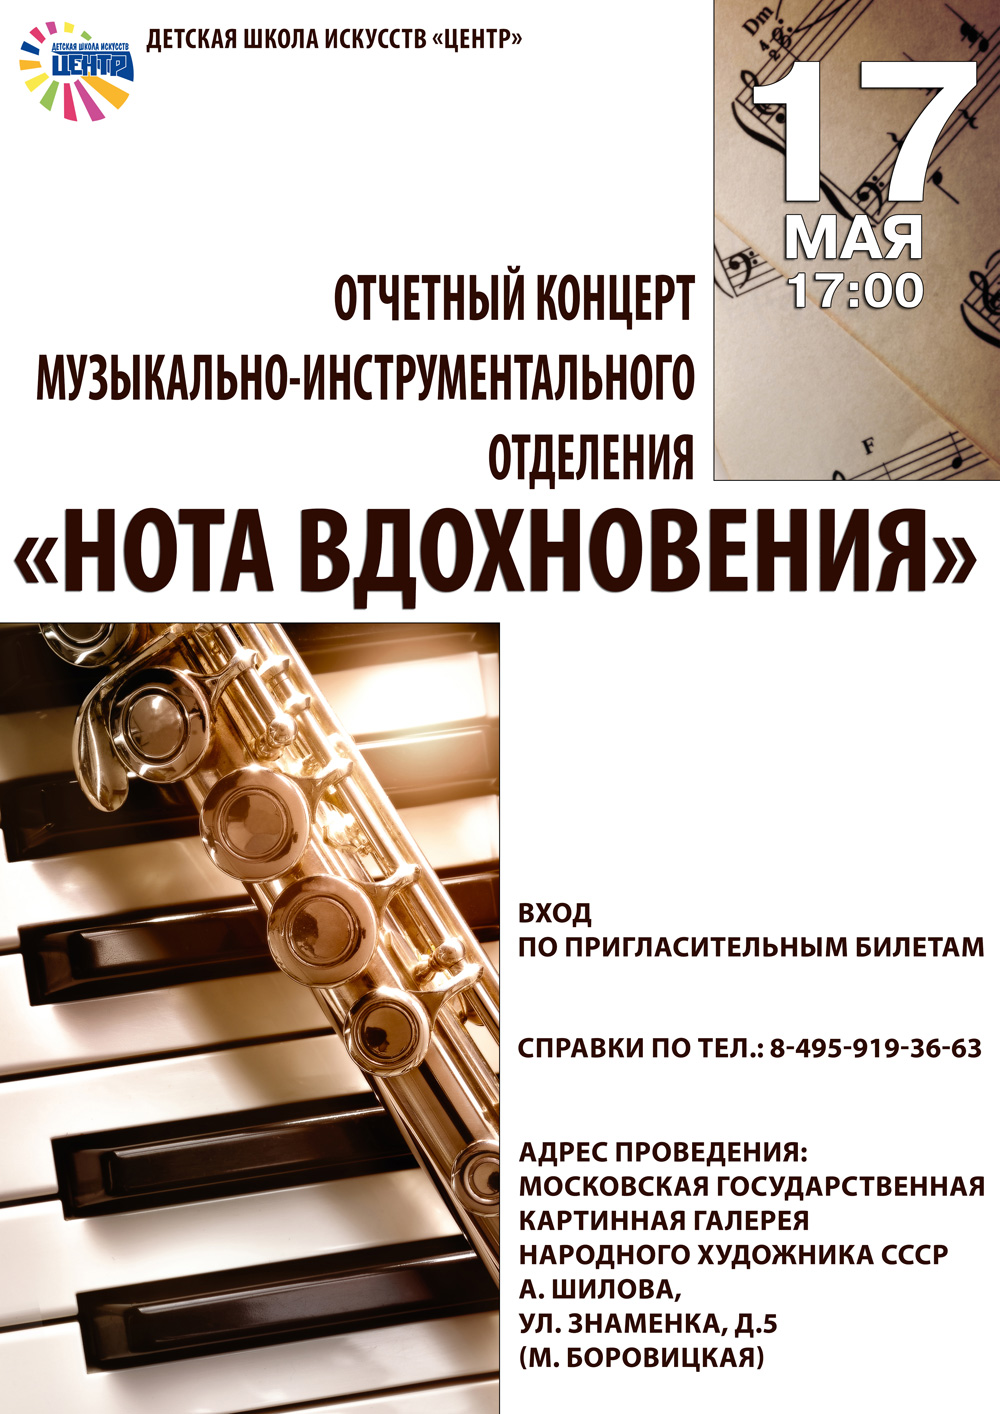 Отчетный концерт музыкально-инструментального отделения "Нота вдохновения"